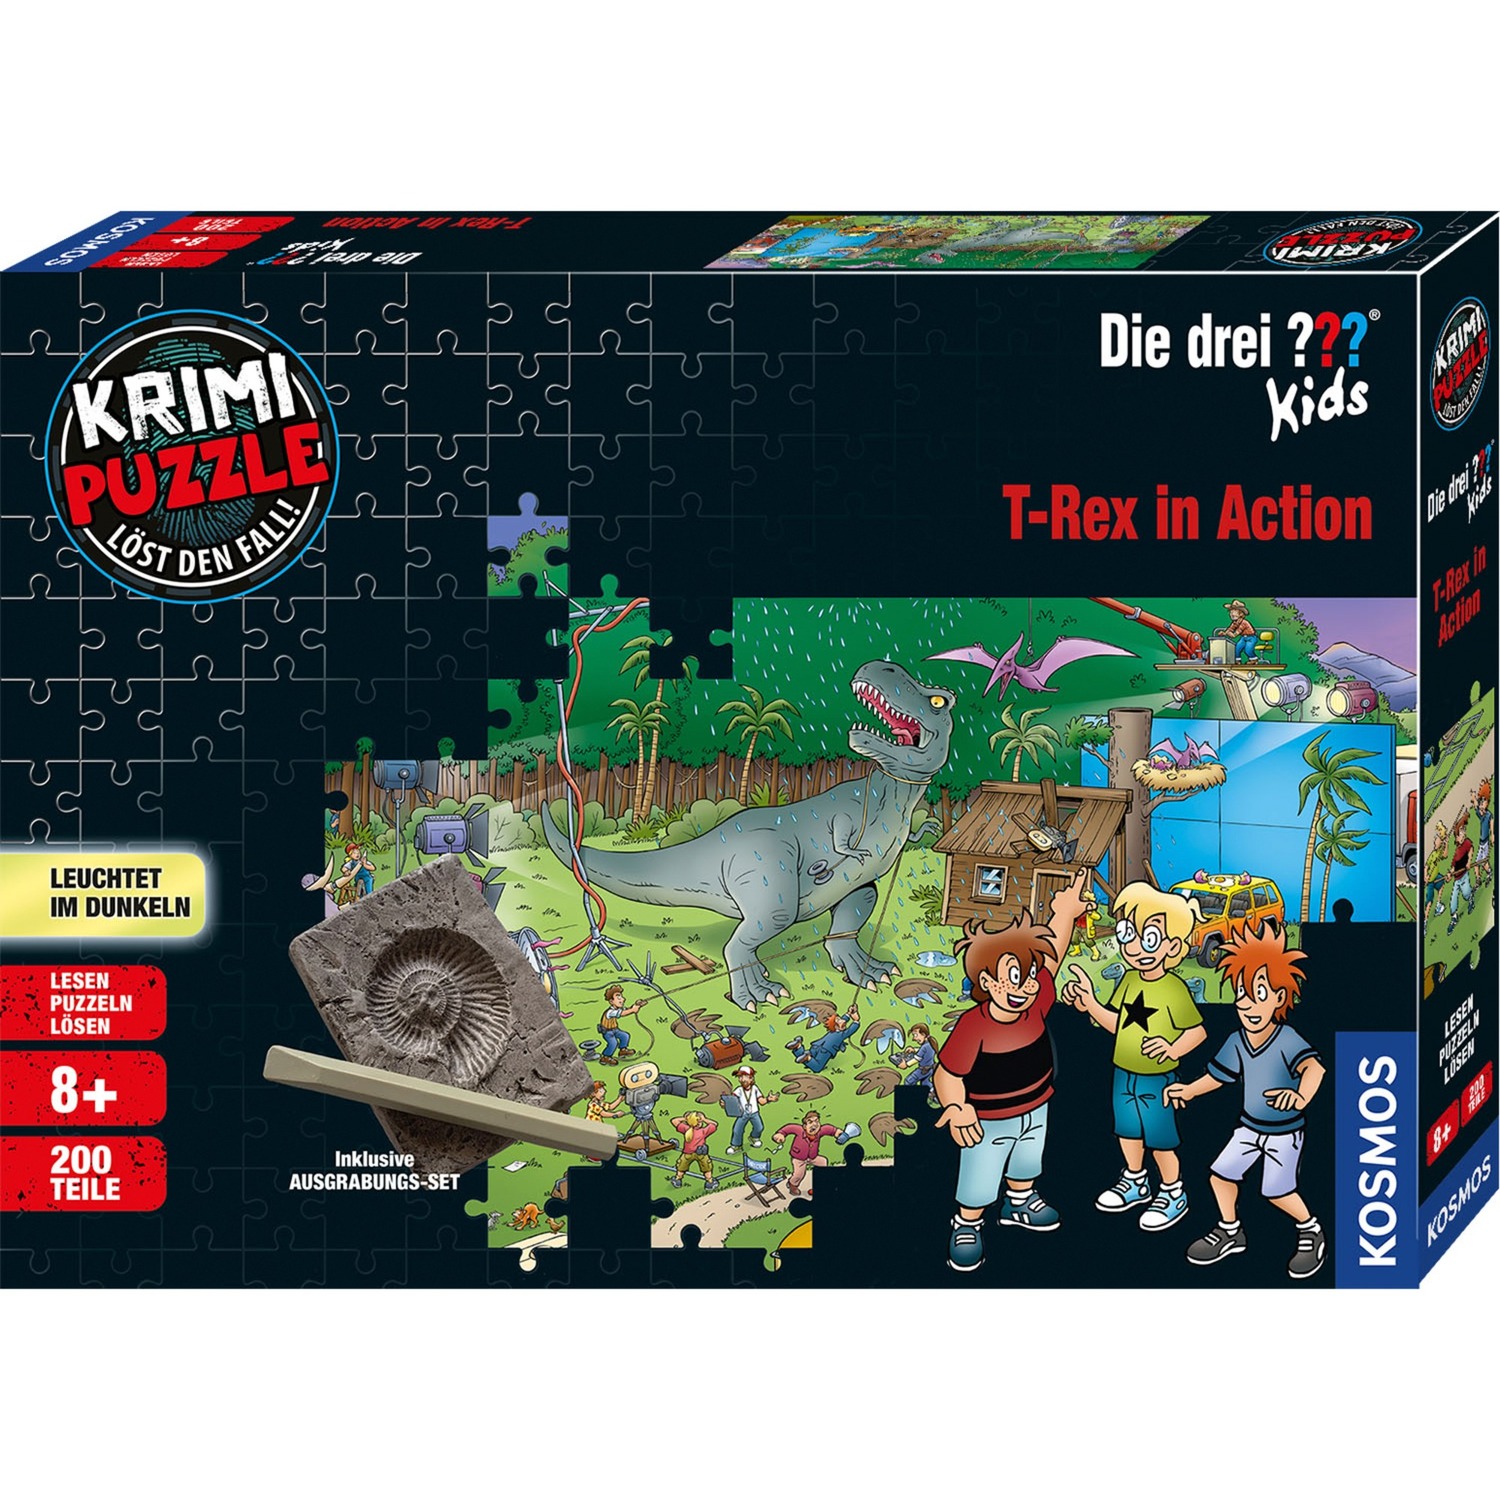 Image of Alternate - Krimi-Puzzle: Die drei ??? Kids - T-Rex in Action online einkaufen bei Alternate